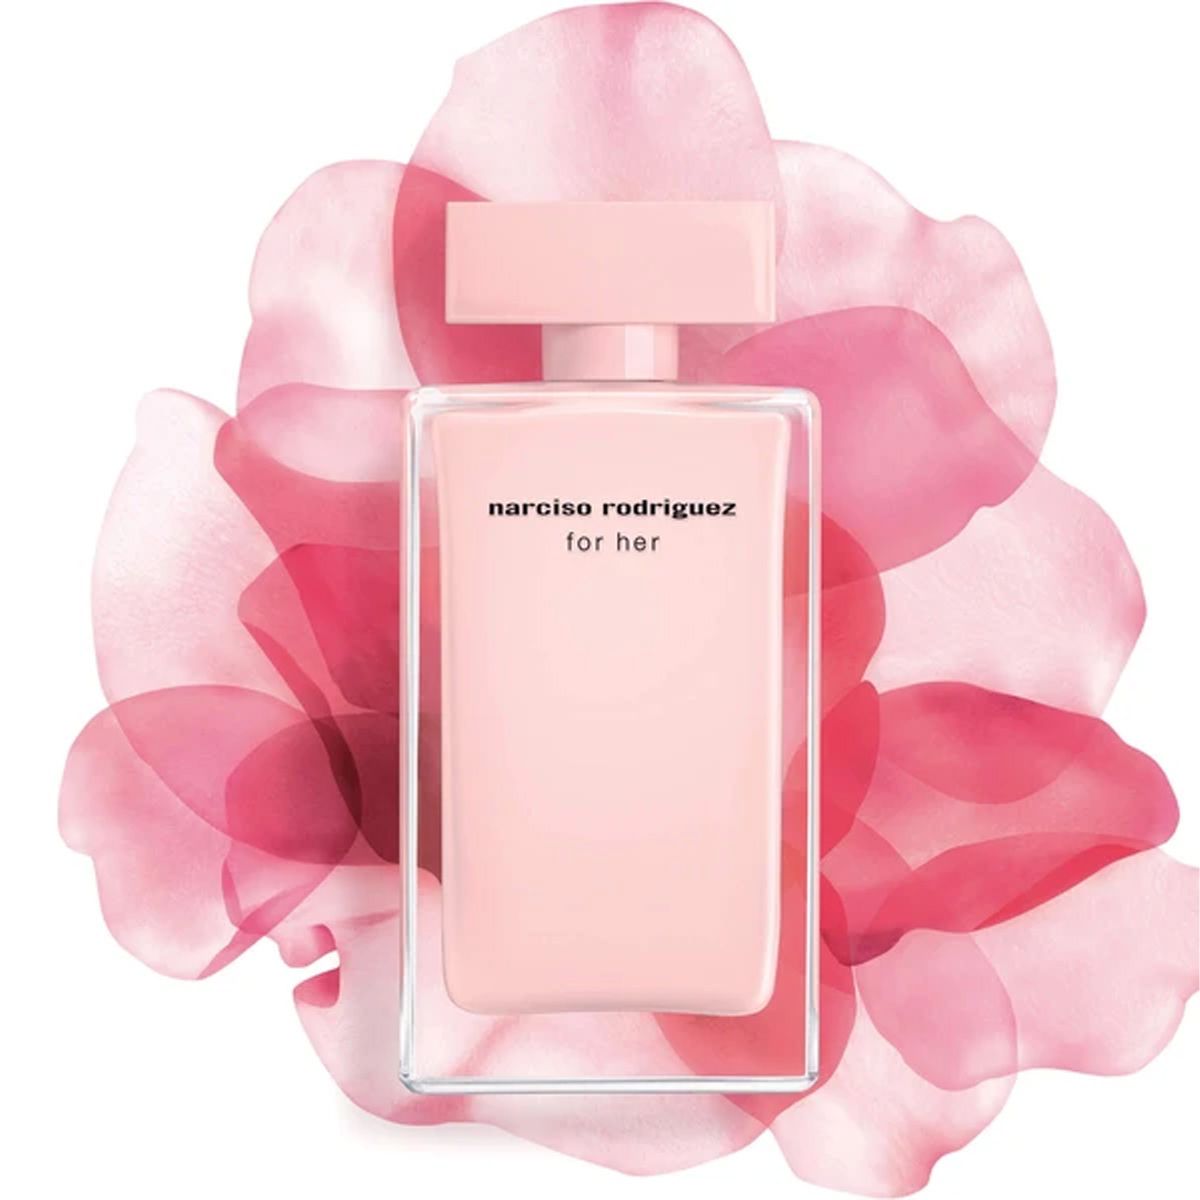  Narciso Rodriguez For Her Eau de Parfum 